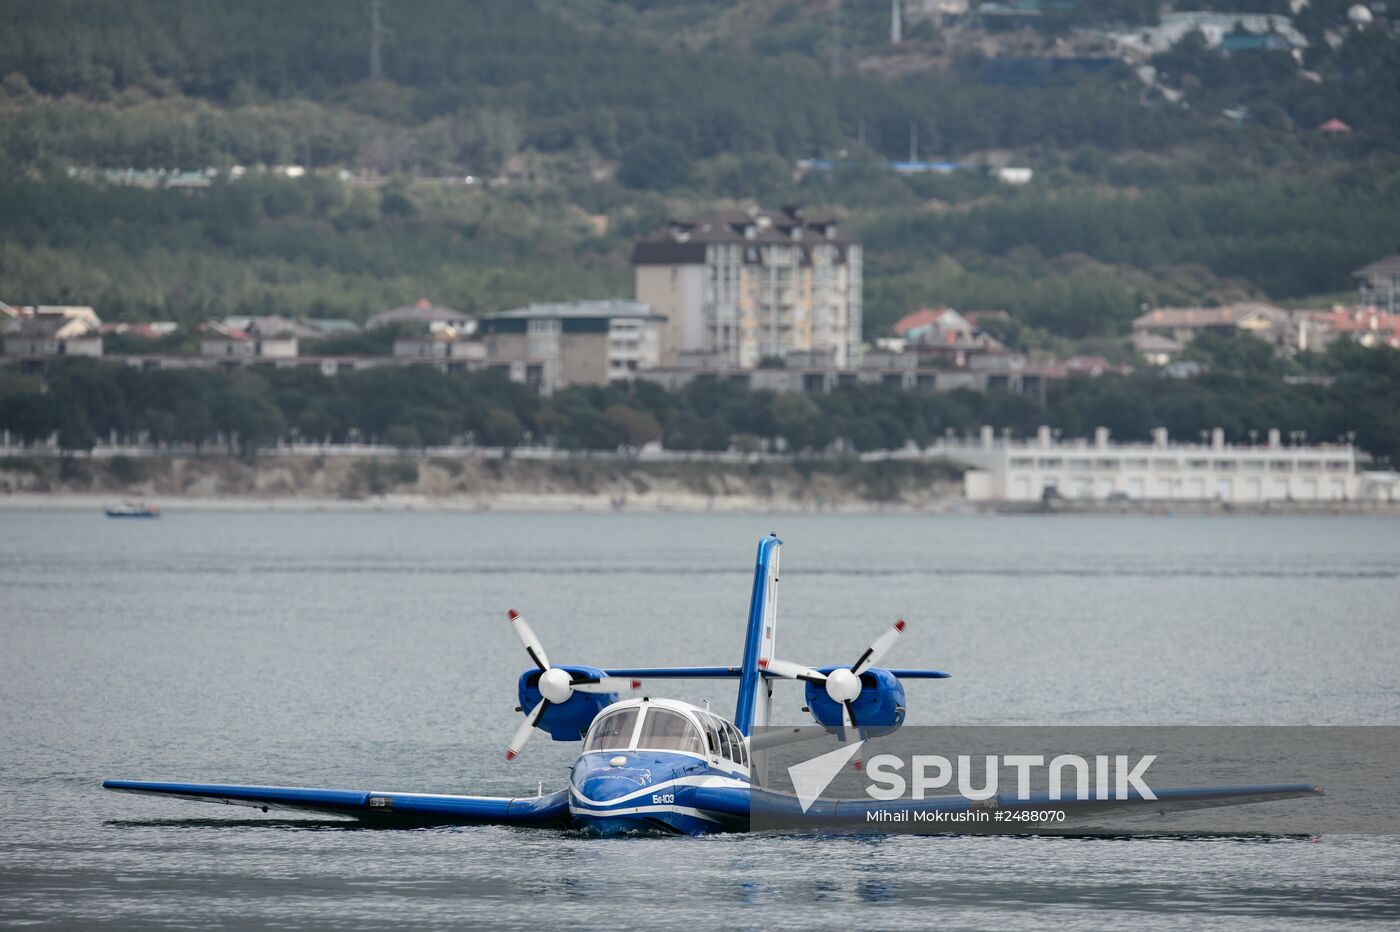 International Hydro Air Salon 2014 opens in Gelendzhik